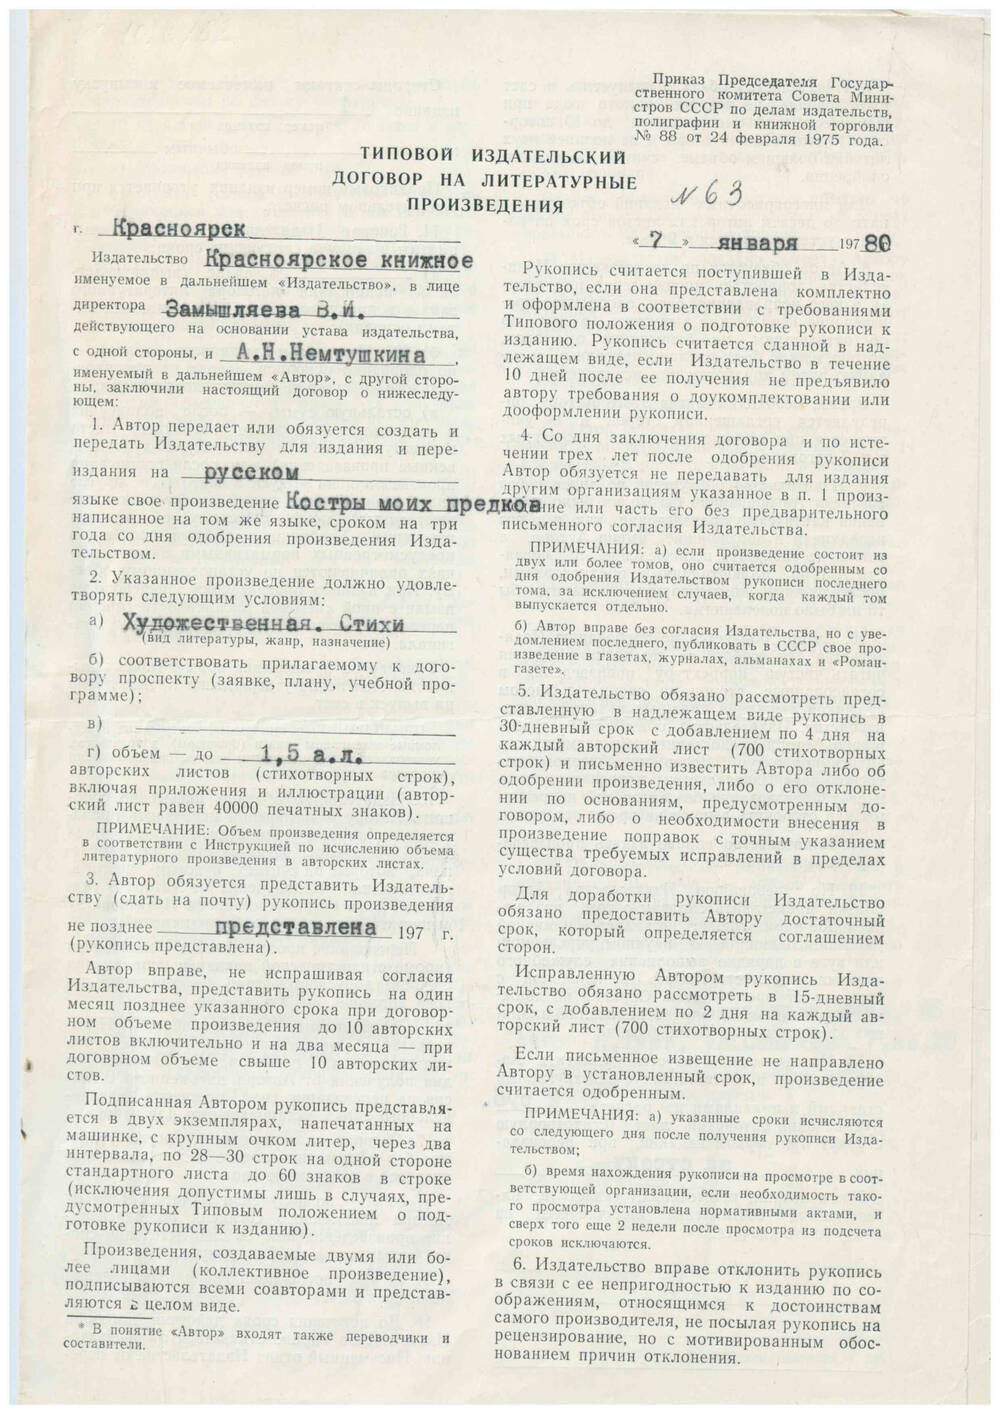 Типовой издательский договор на литературные произведения № 63 А.Н. Немтушкина